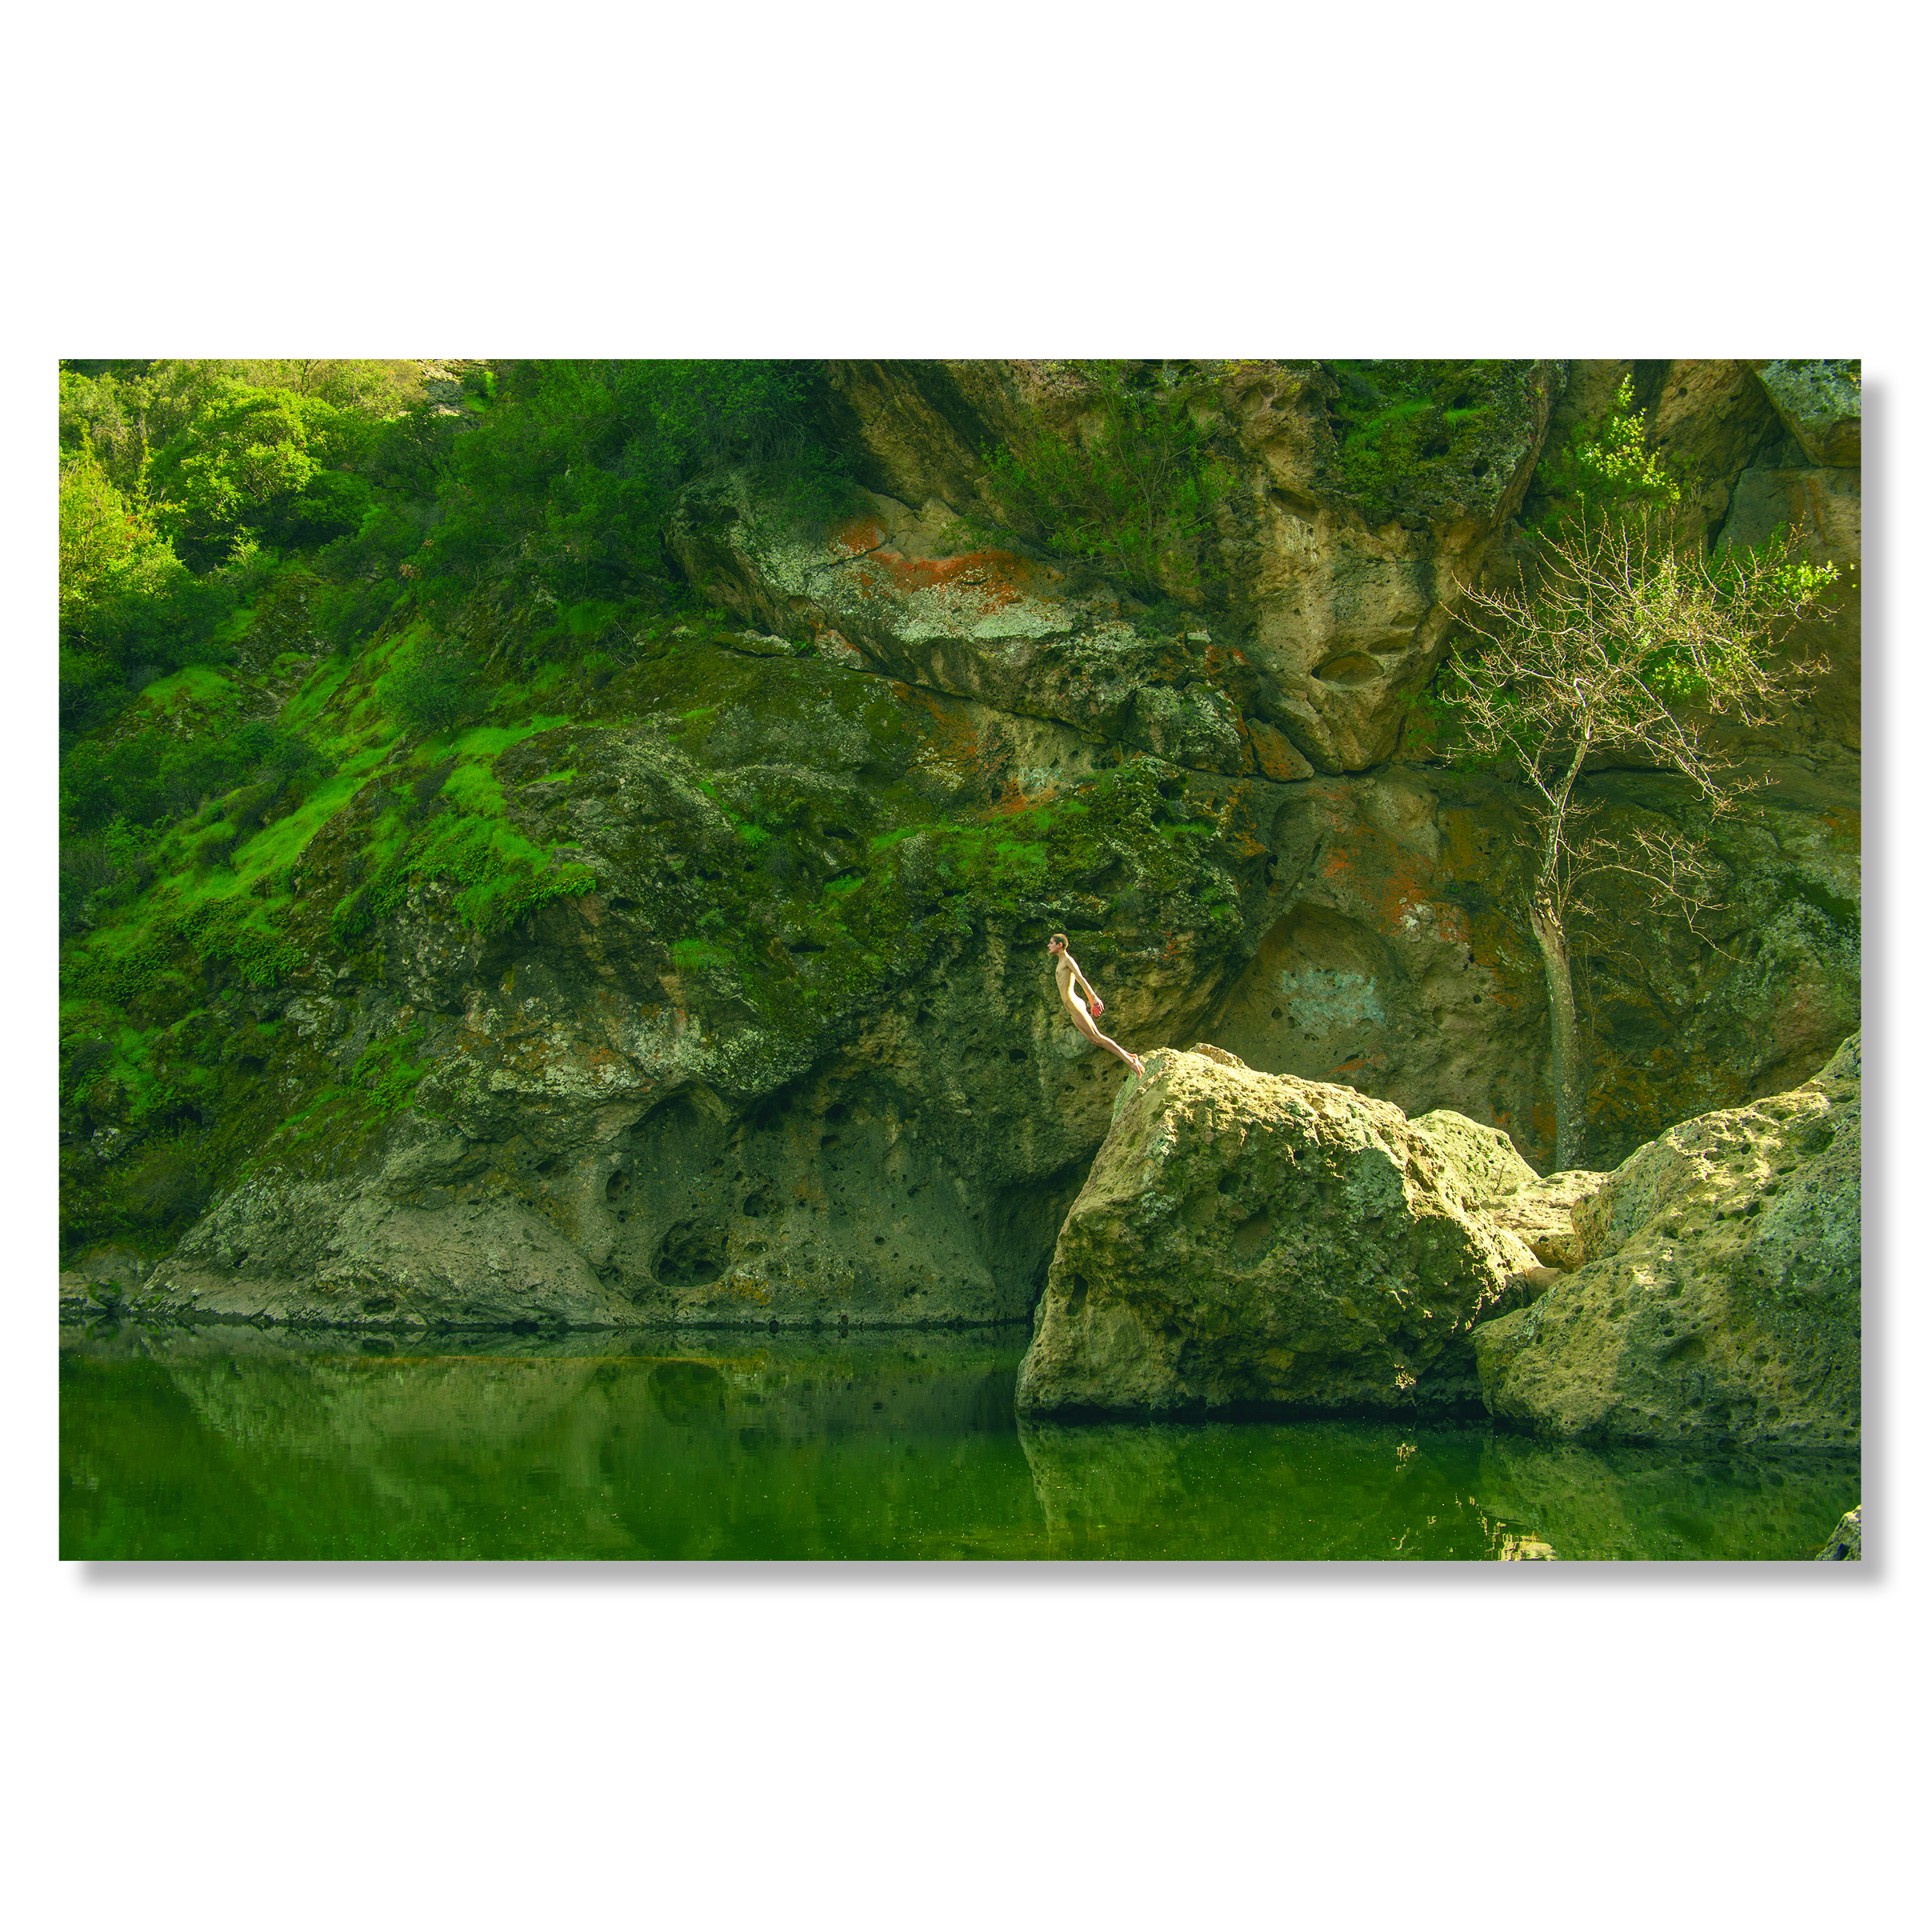 Malibu Rock Pond by Tyler Shields